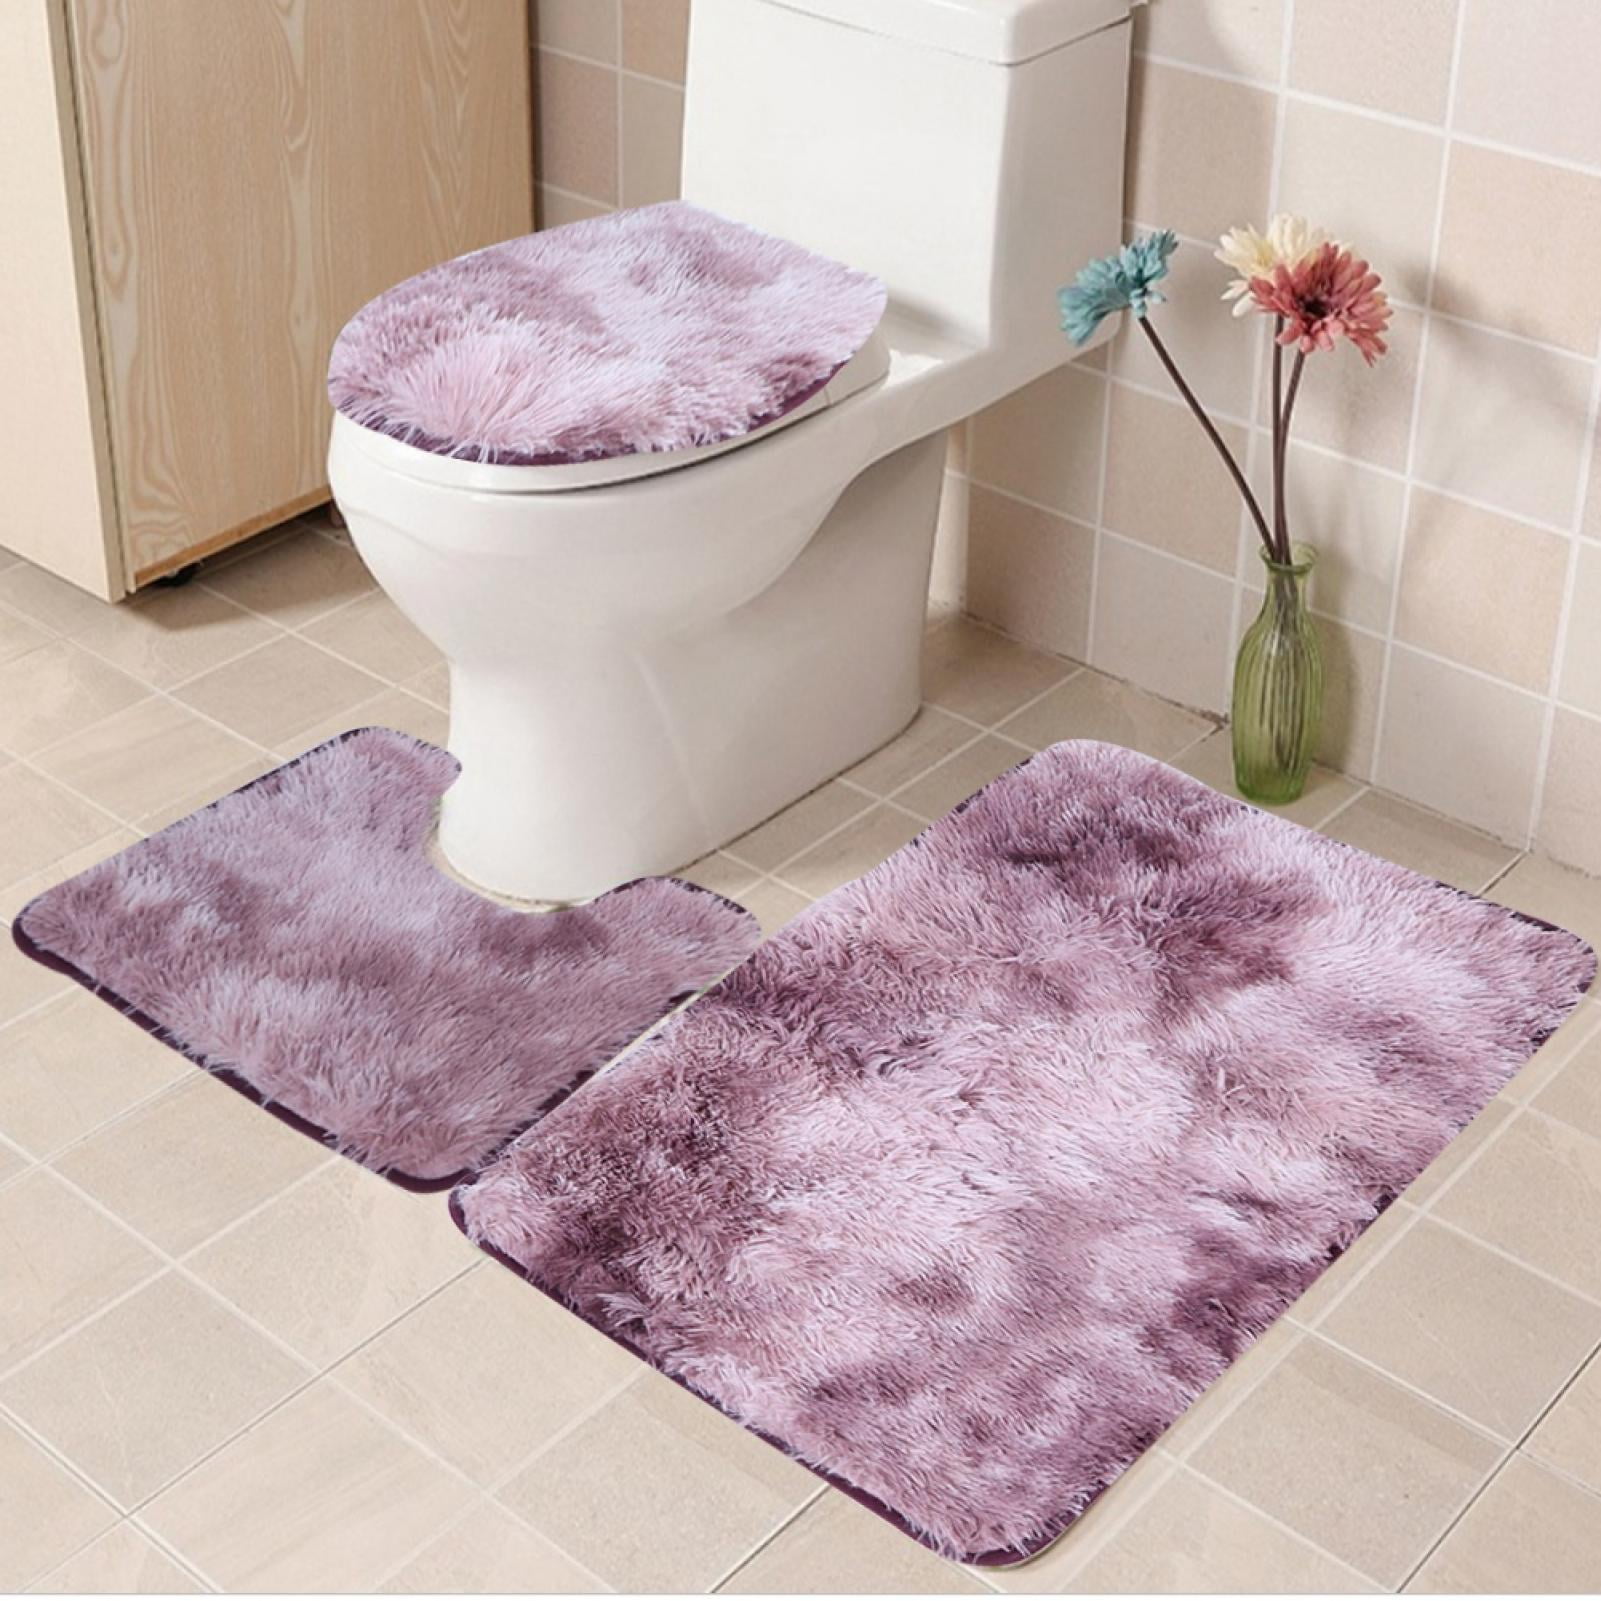 3pcs Bathroom Rug Set Soft Non Slip Toilet Lid Cover Bath Mat Contour Rug Home Decoration